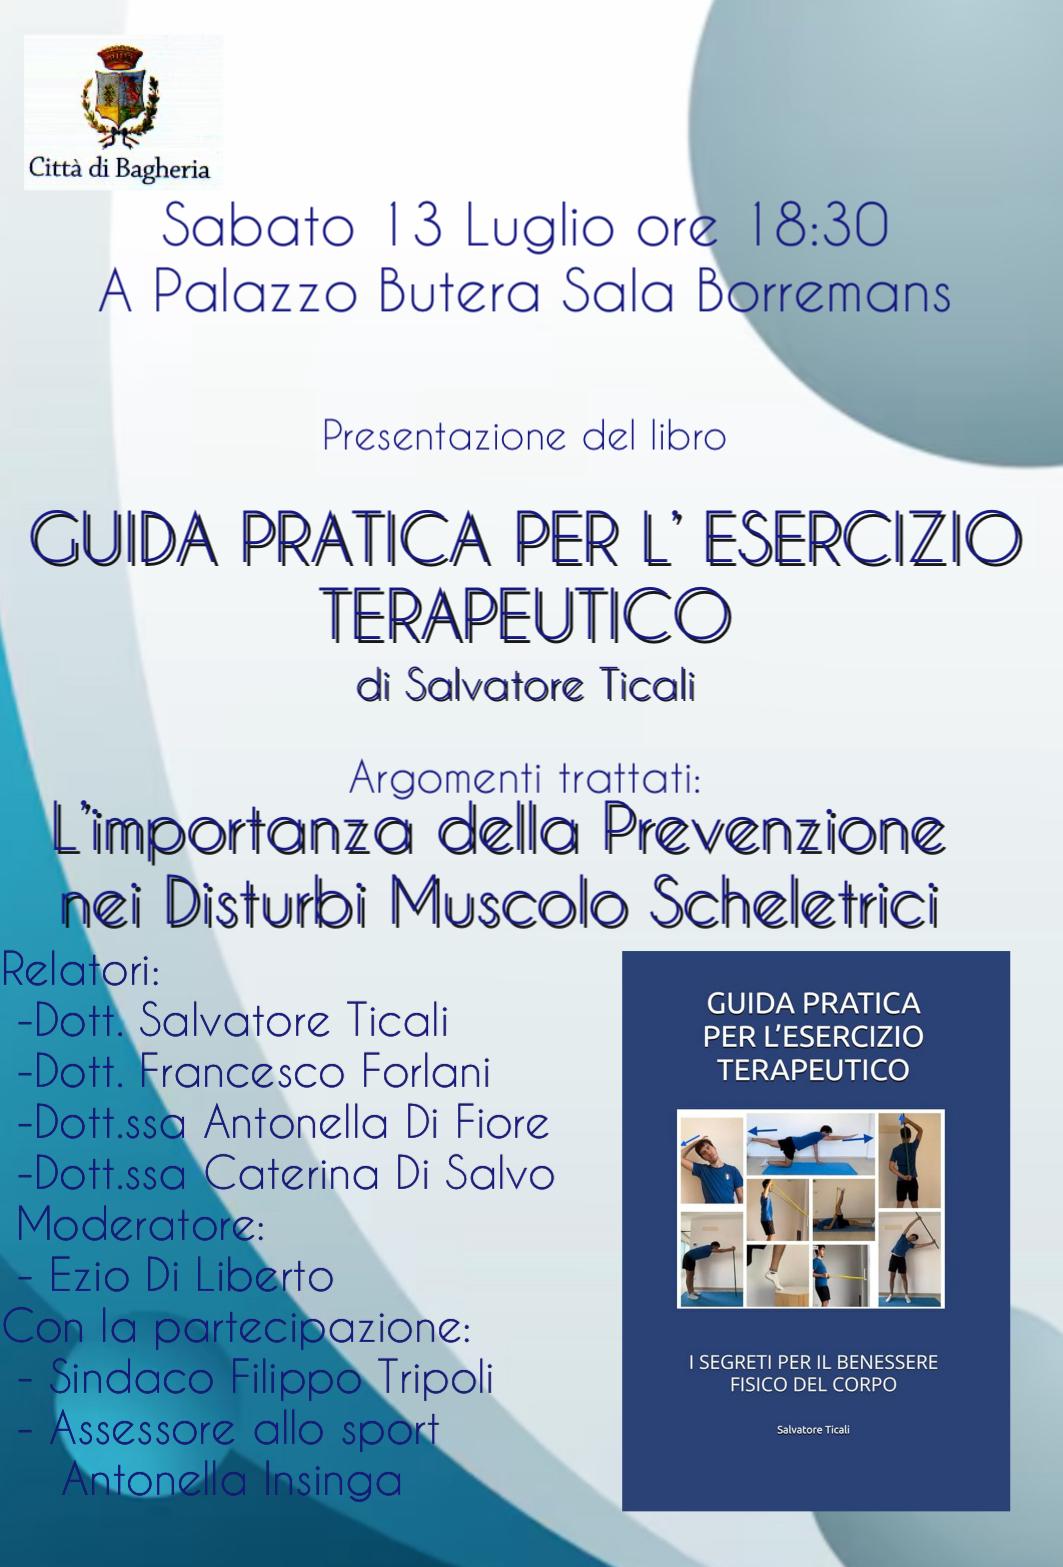 Presentazione del libro: “ Guida pratica per l'esercizio terapeutico” di Salvatore Ticali a villa Butera.